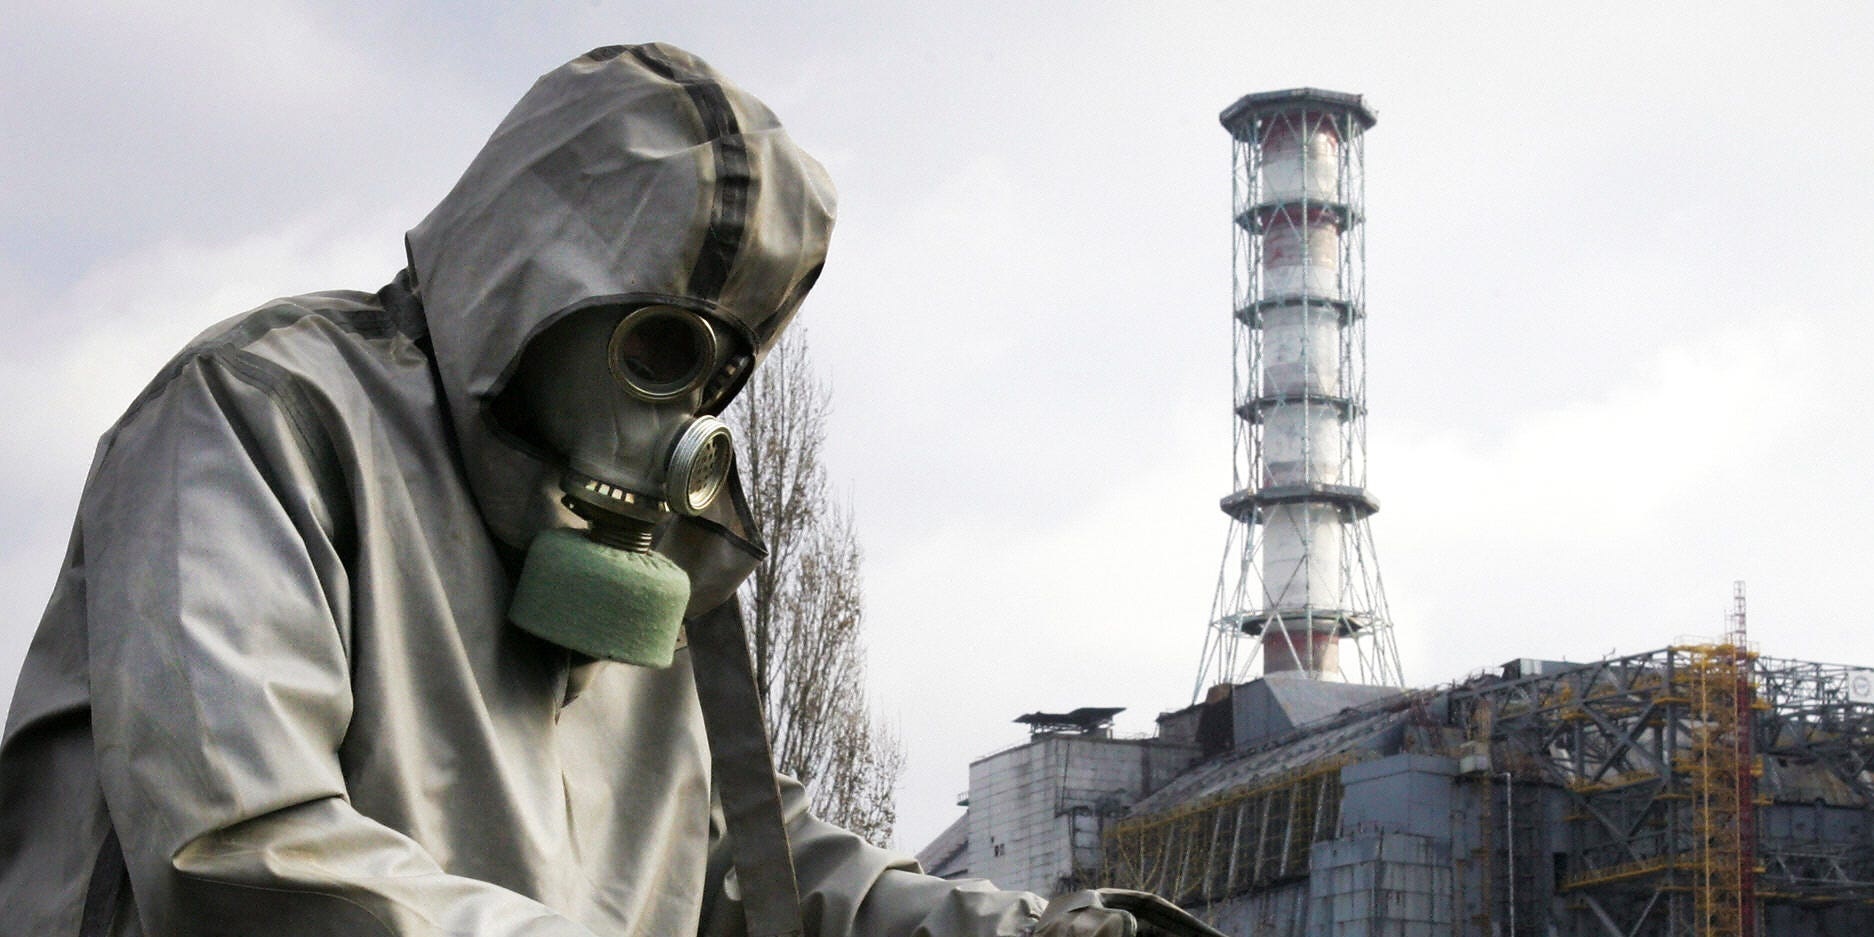 Pasukan Rusia meninggalkan sekitar 100 liter ‘vodka berkualitas tinggi’ di pabrik Chernobyl sebelum mereka mundur